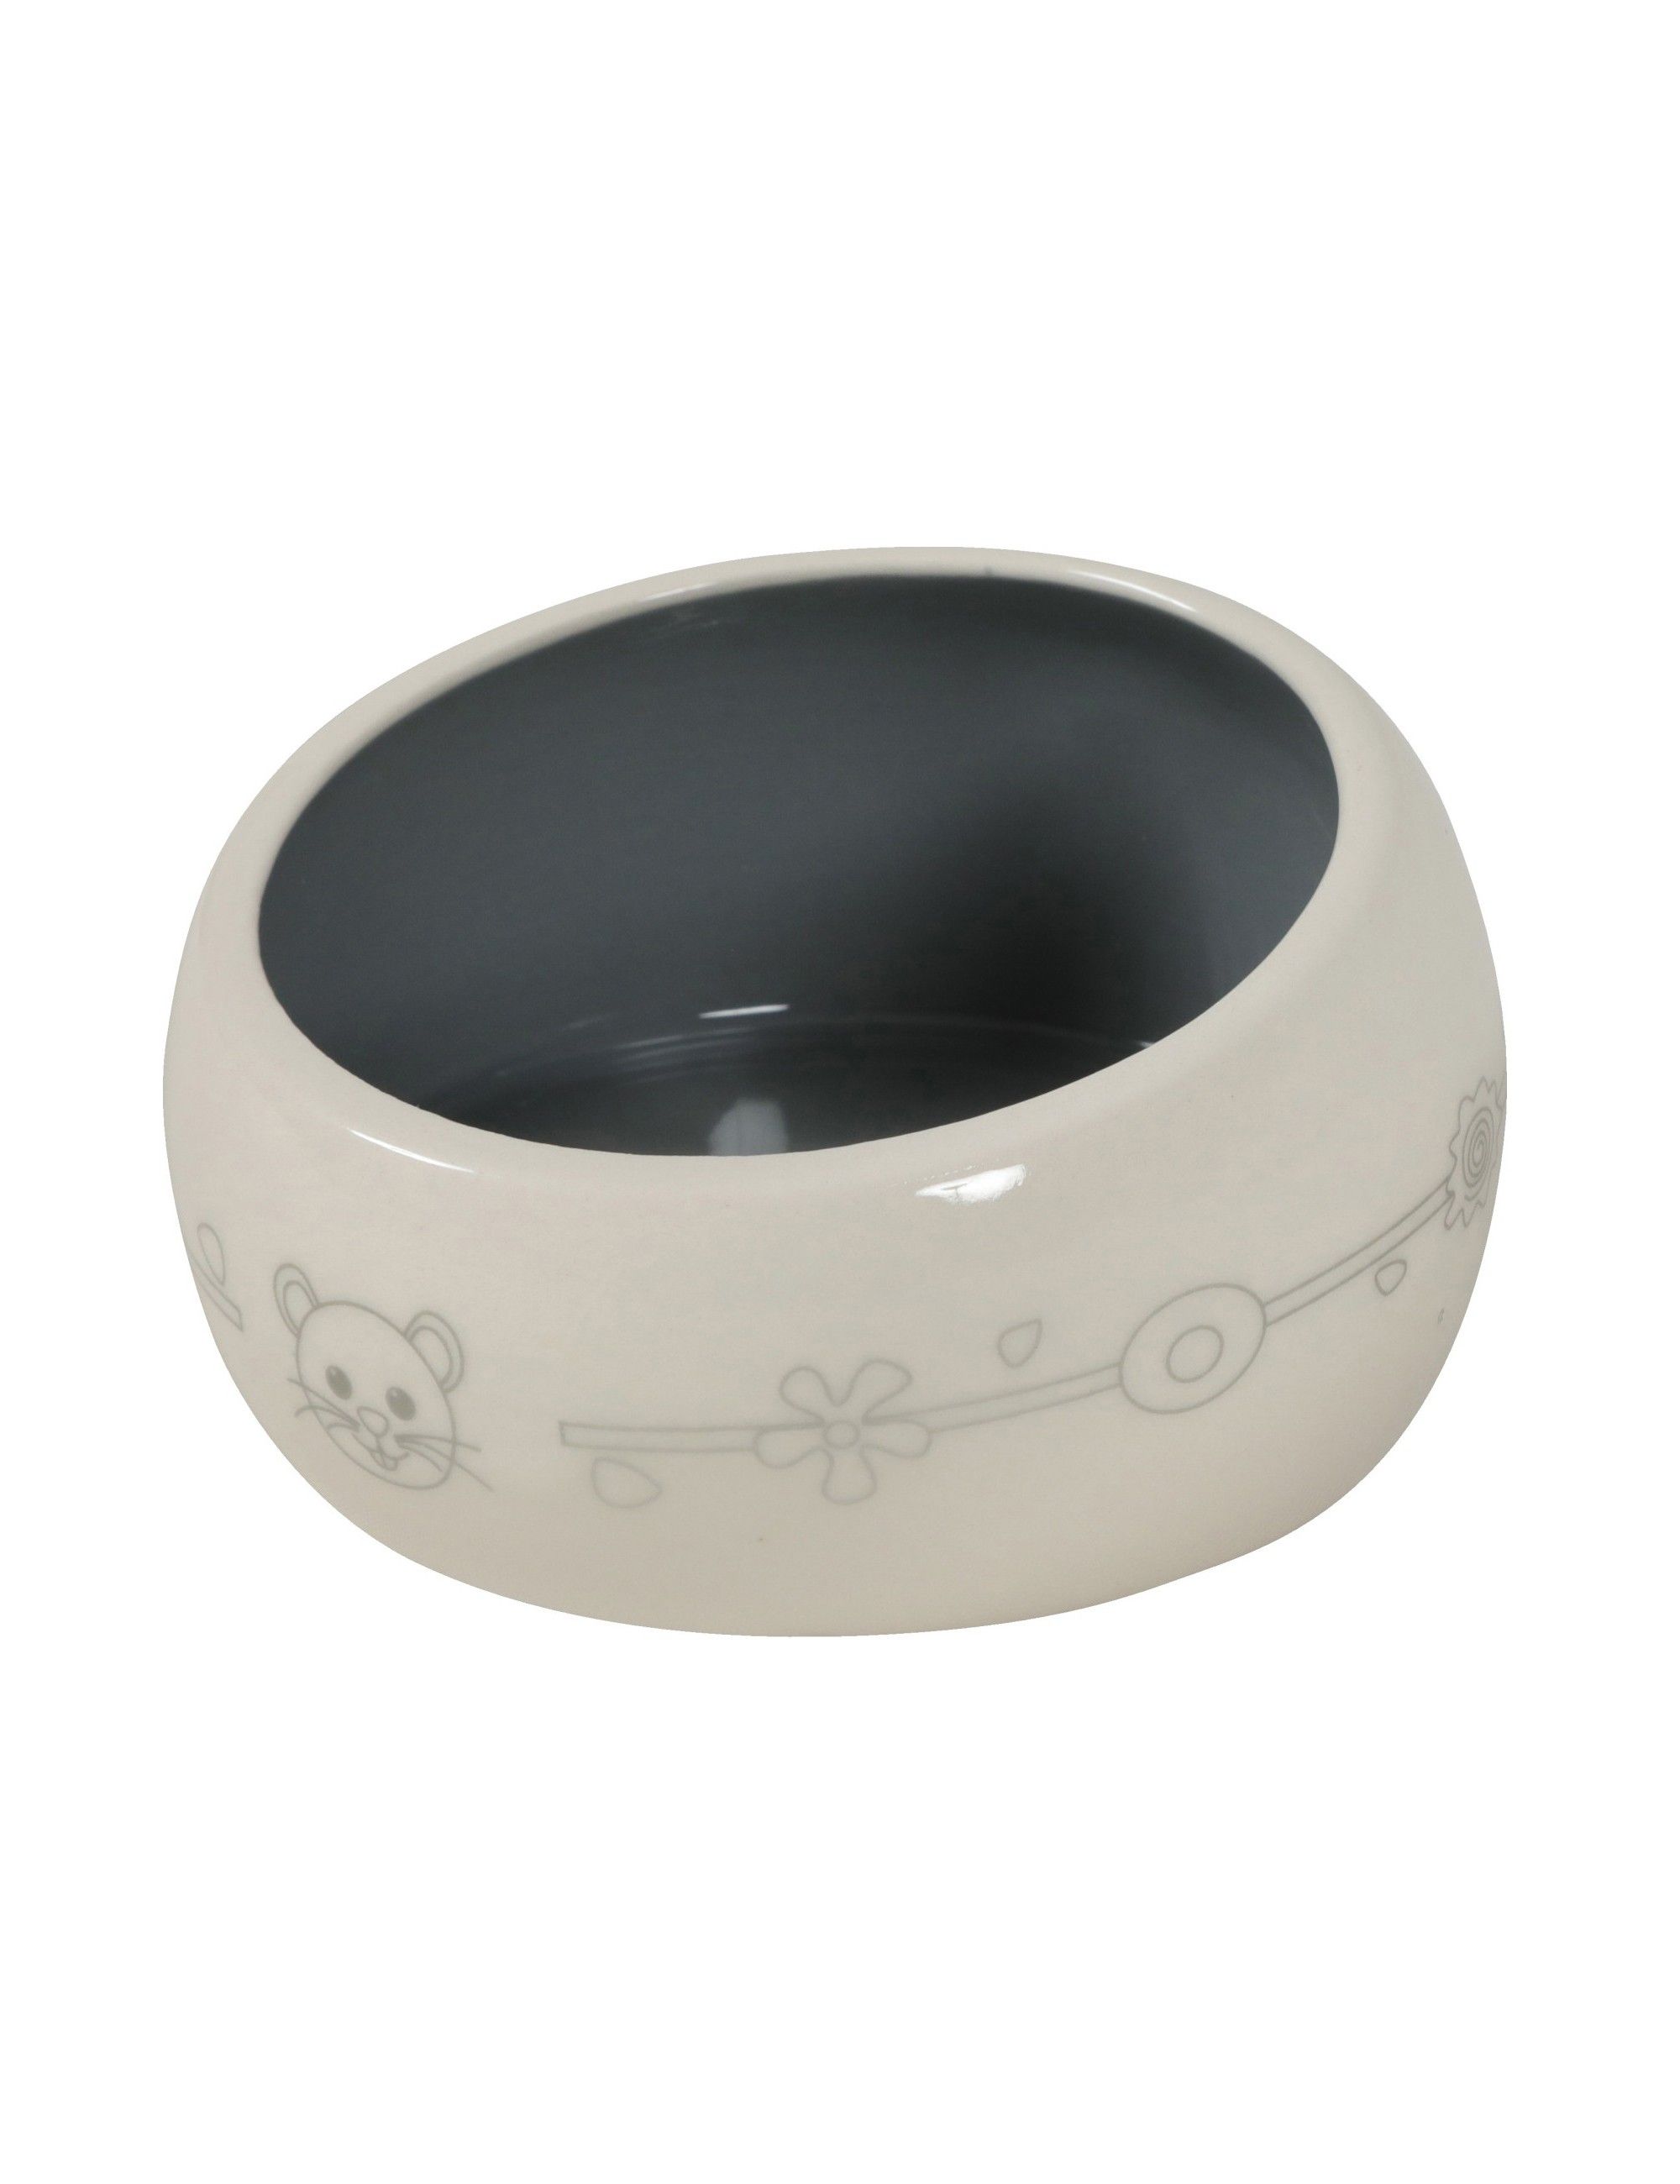 ZOLUX - Anti-splash Ceramic Bowl - Beige - 200ml